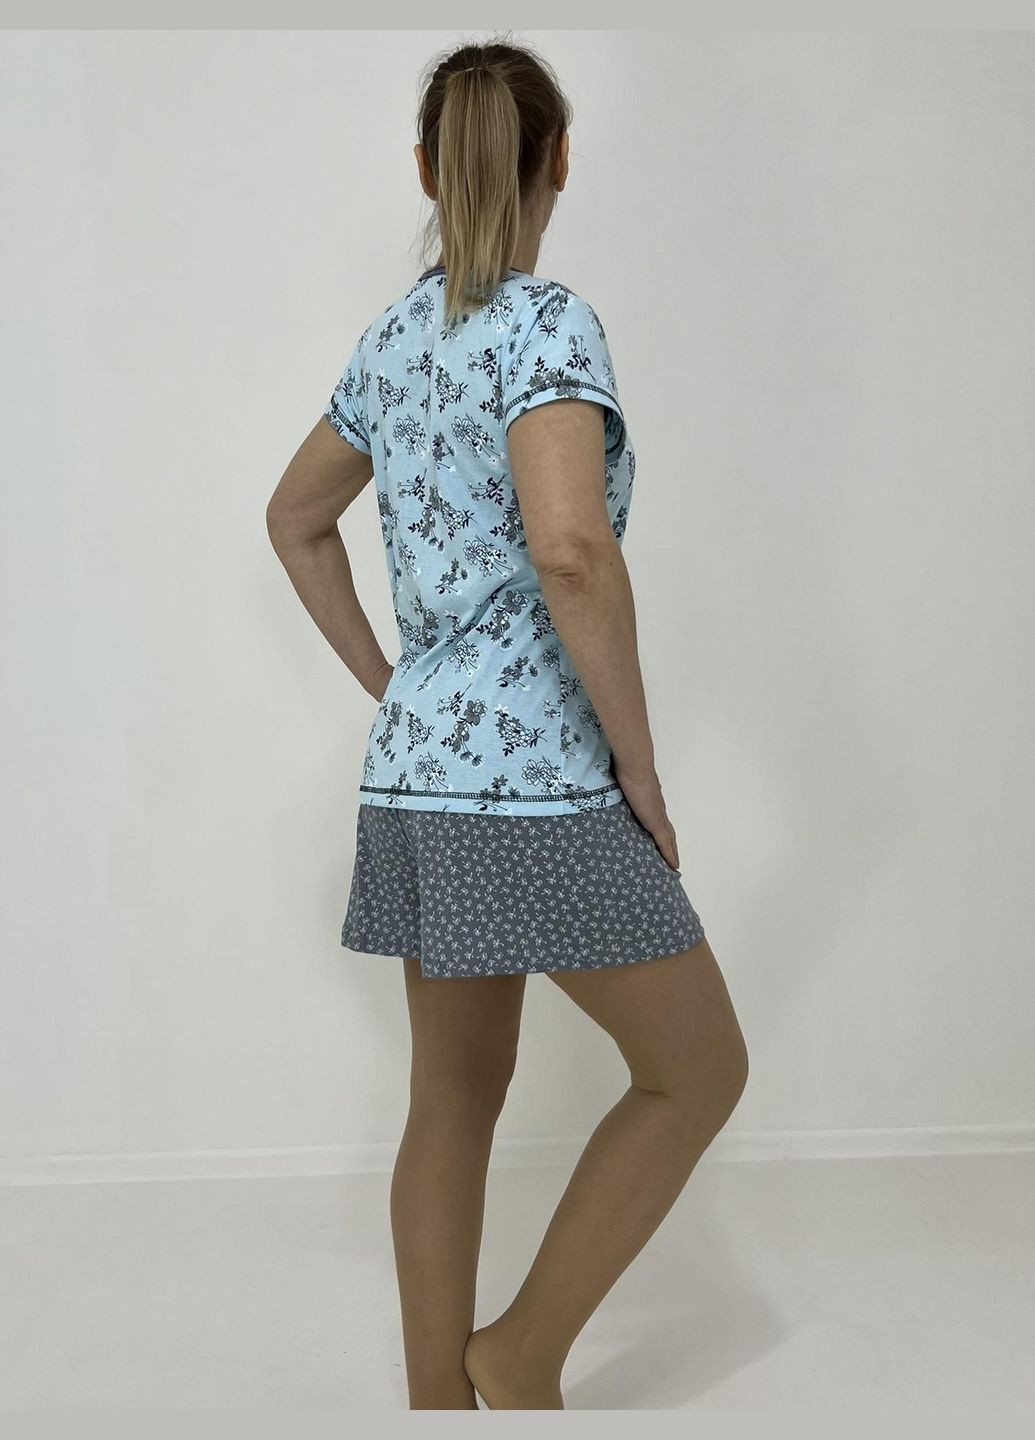 Голубая всесезон женский домашний комплект юлия (футболка + шорты) 58-60 голубой 58303006-3 Triko